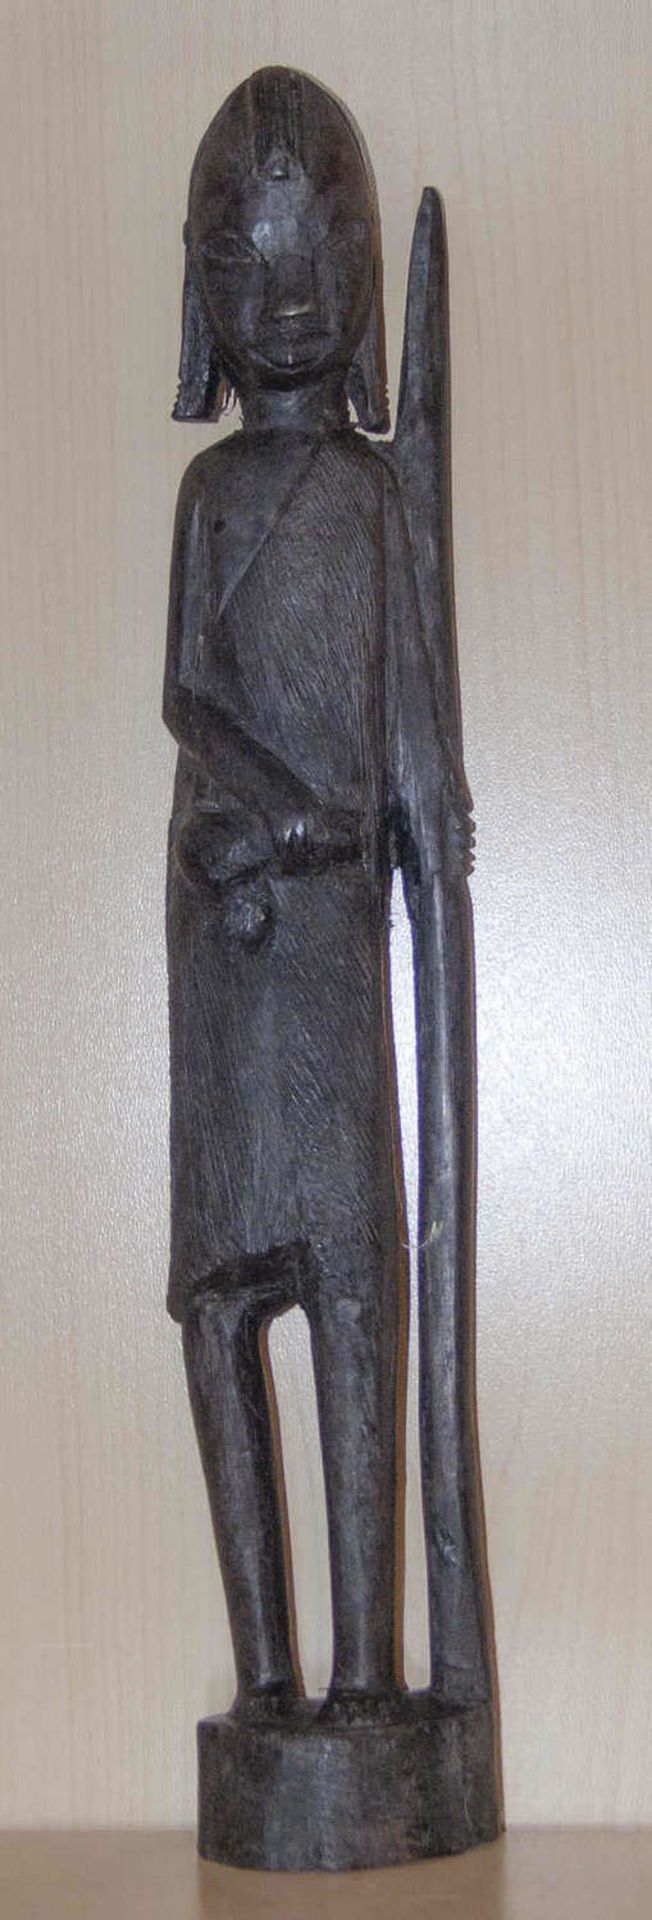 Massai - Krieger. Hartholz. Höhe: ca. 36,5 cm.Maasai warrior. Hardwood. Height: approx. 36.5 cm.